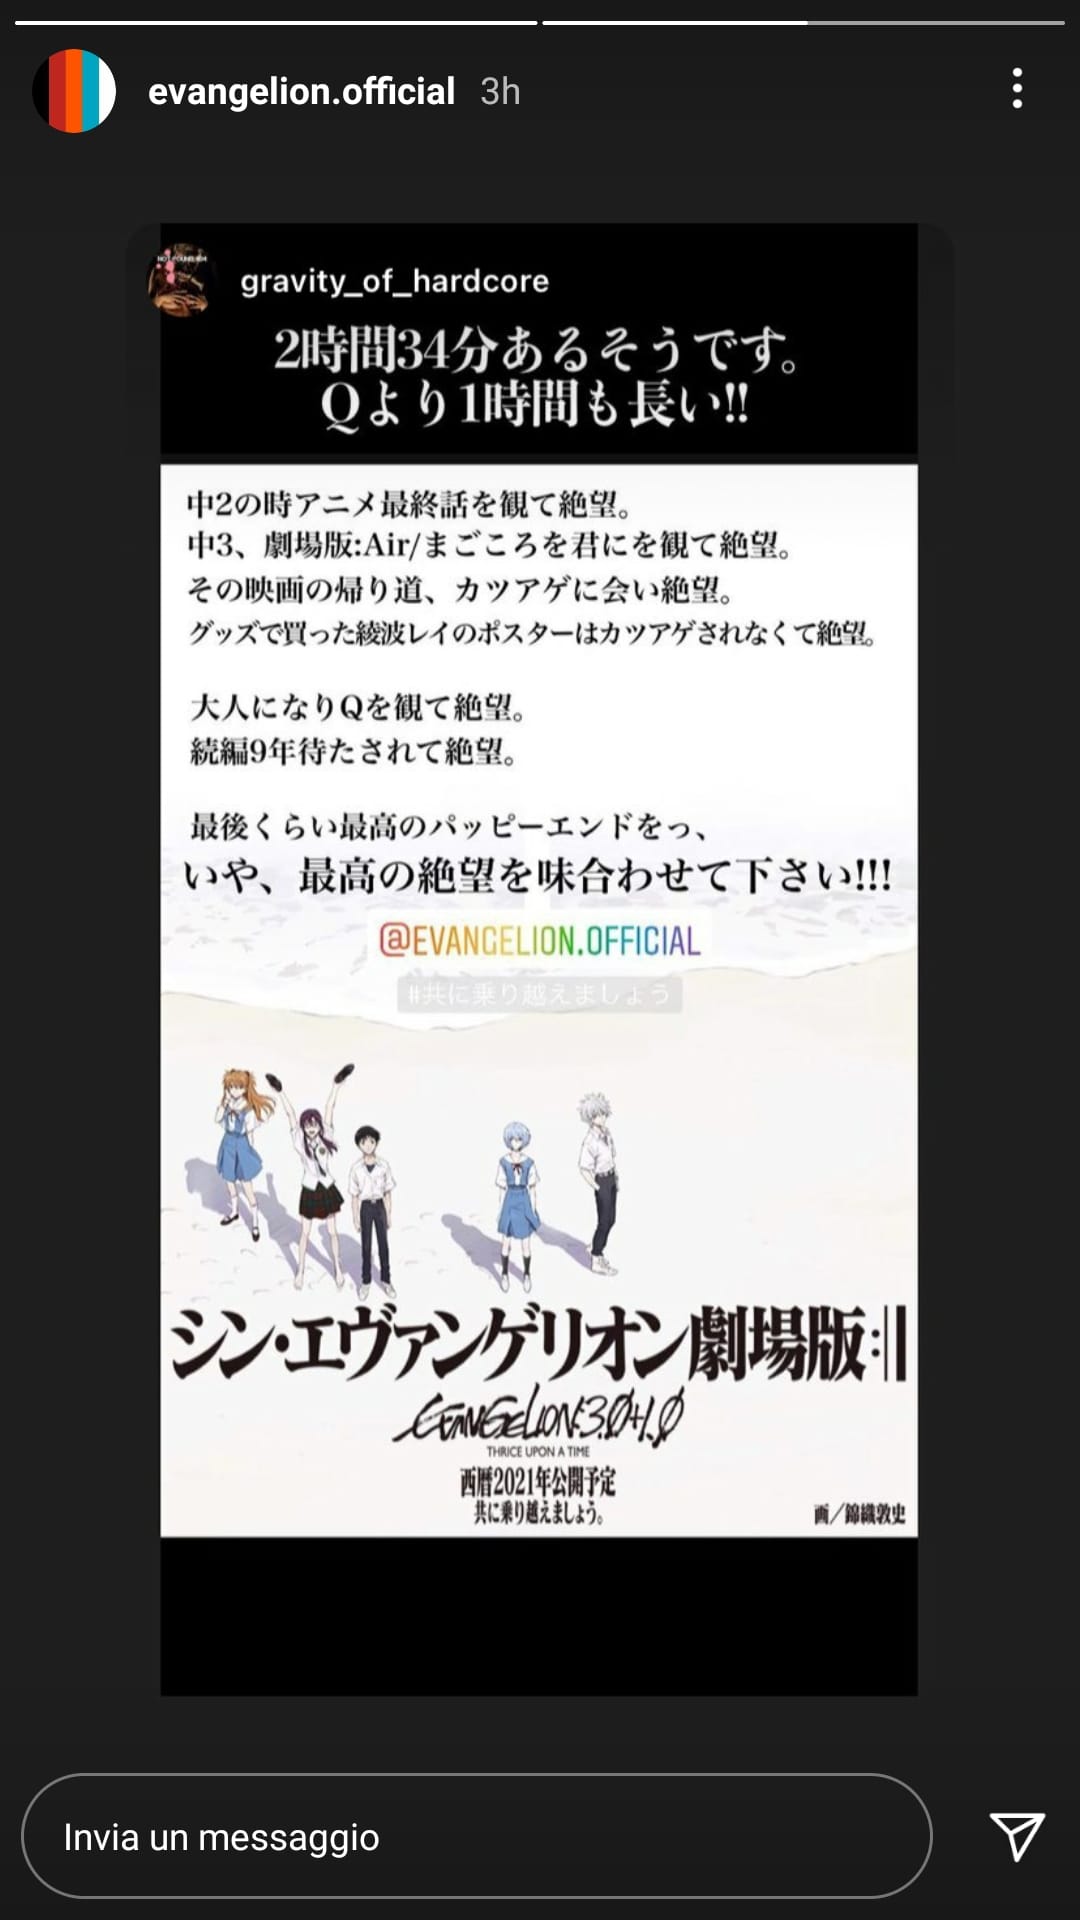 Storie di Instagram relative alla durata del film condivise dall'account ufficiale di Evangelion